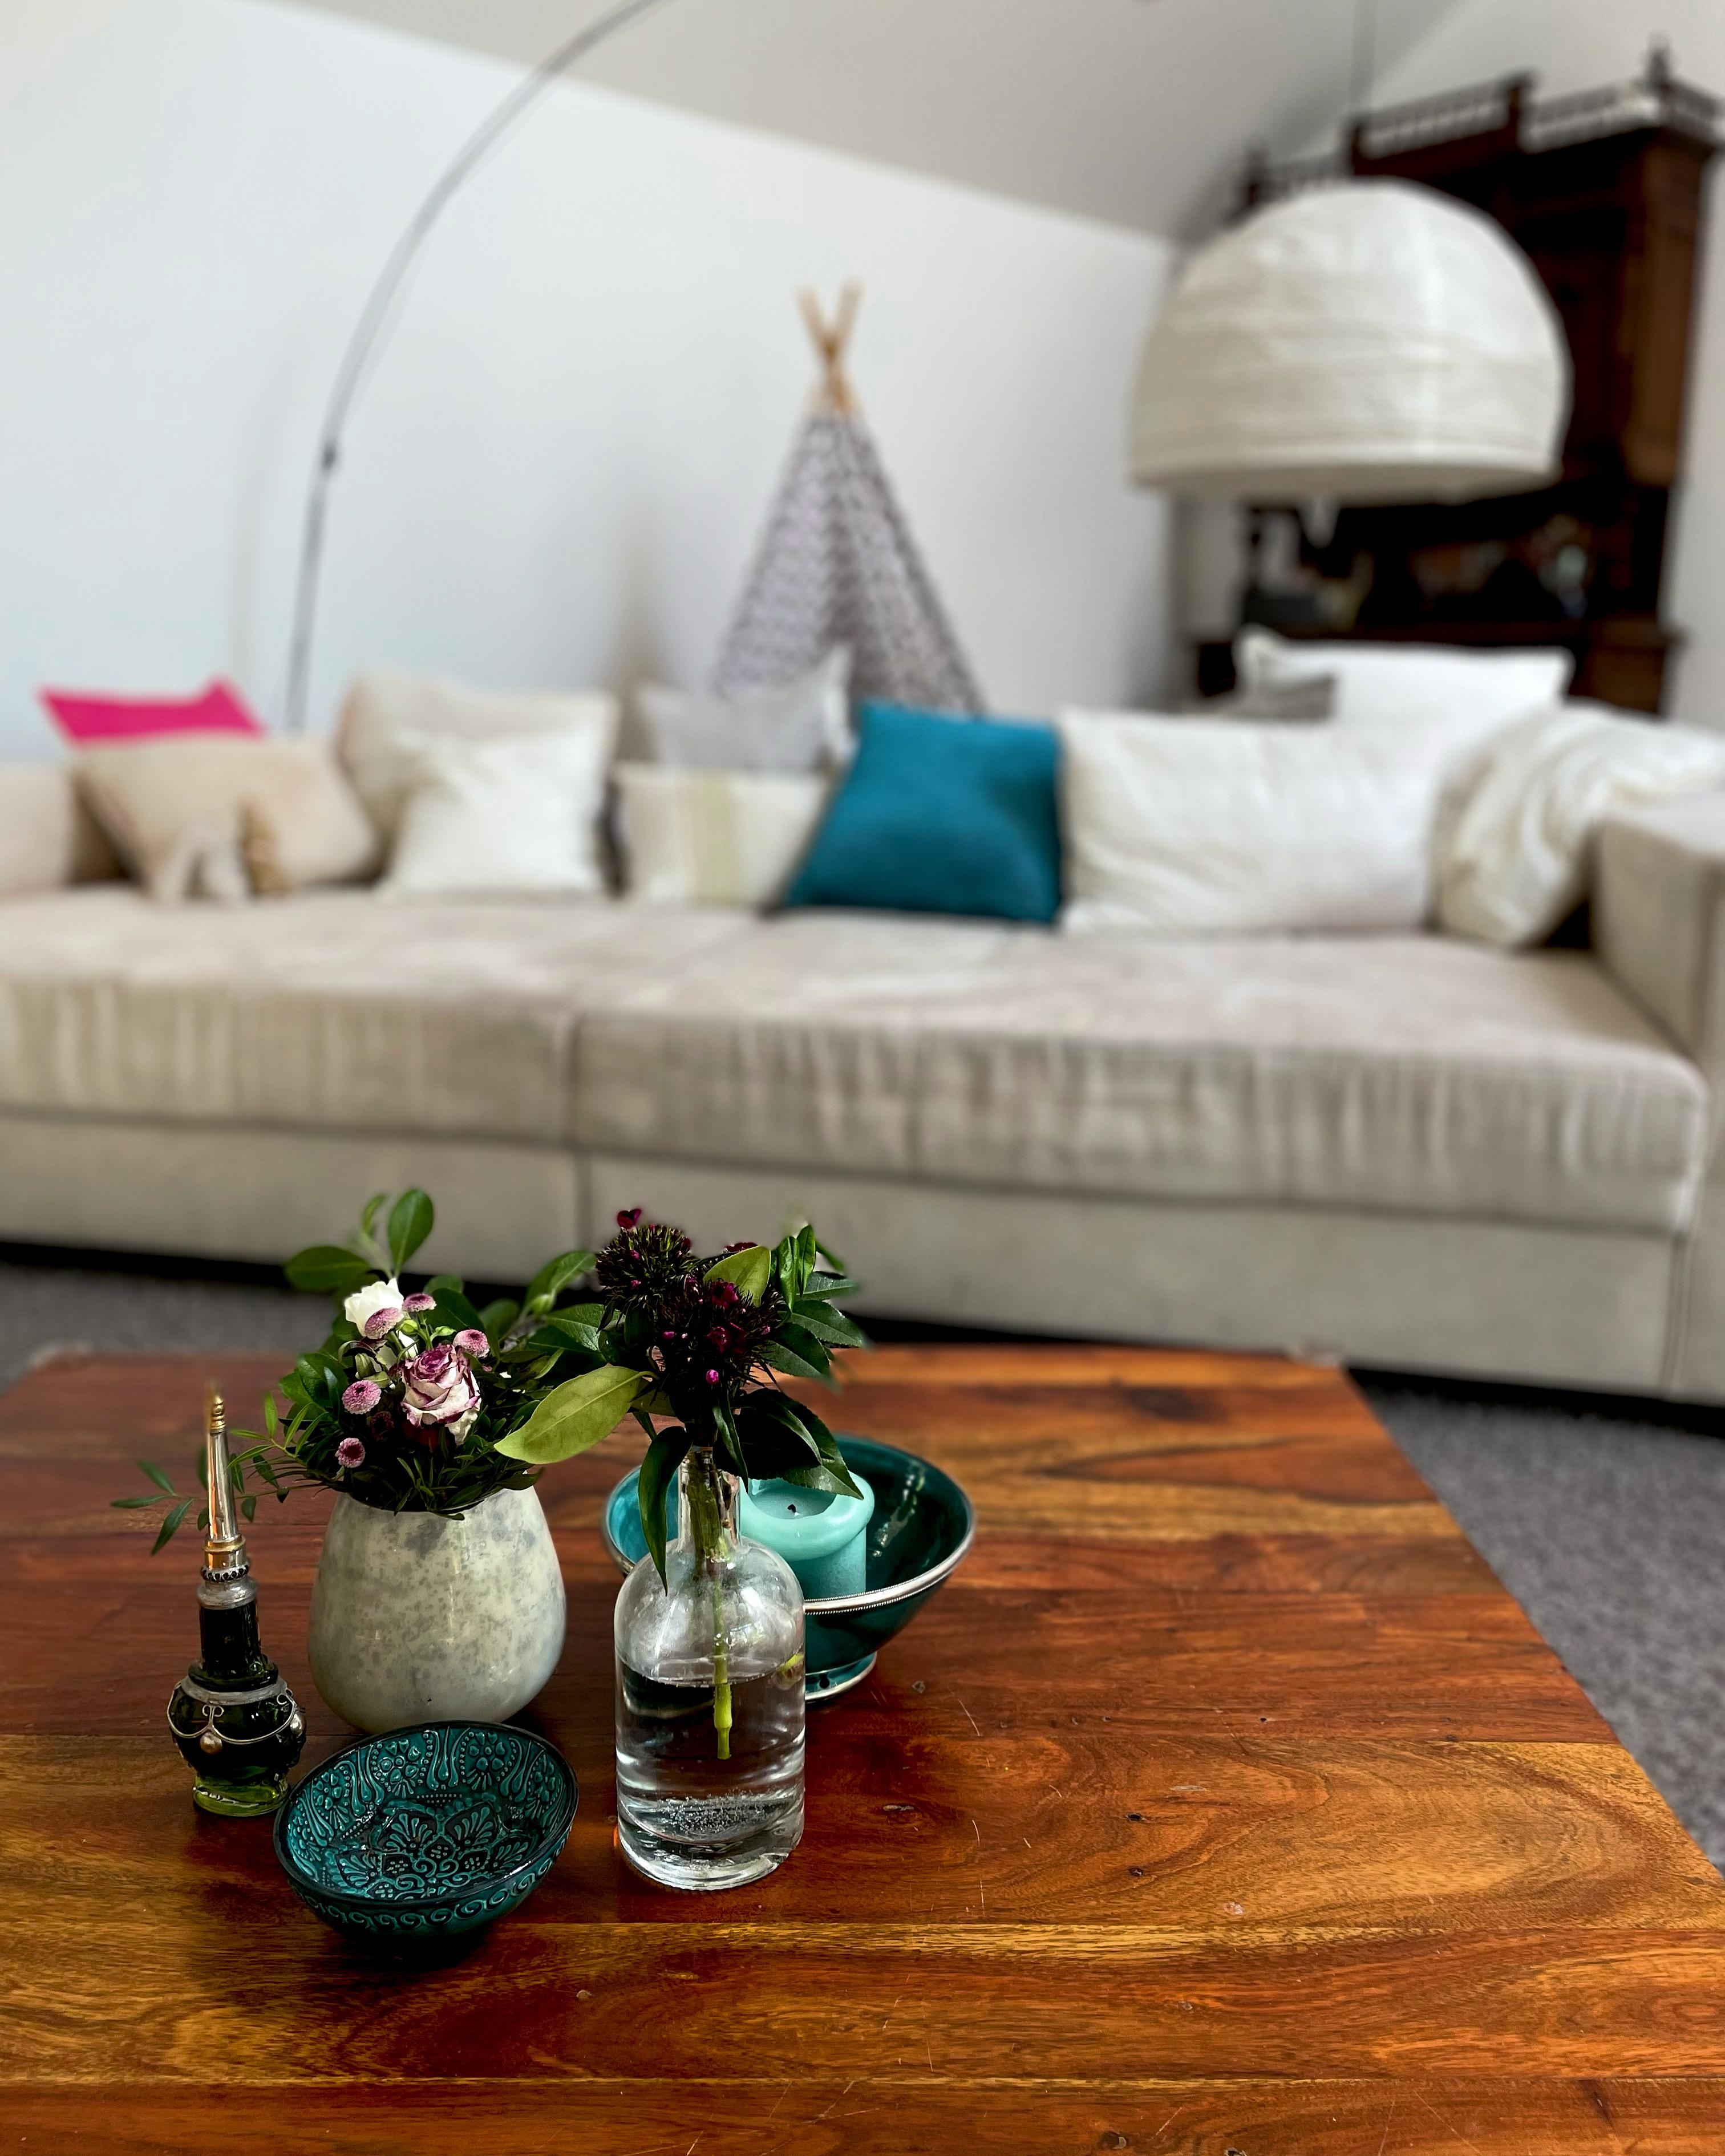 Liebe Grüße von der Couch!
#livingroom #madebymade